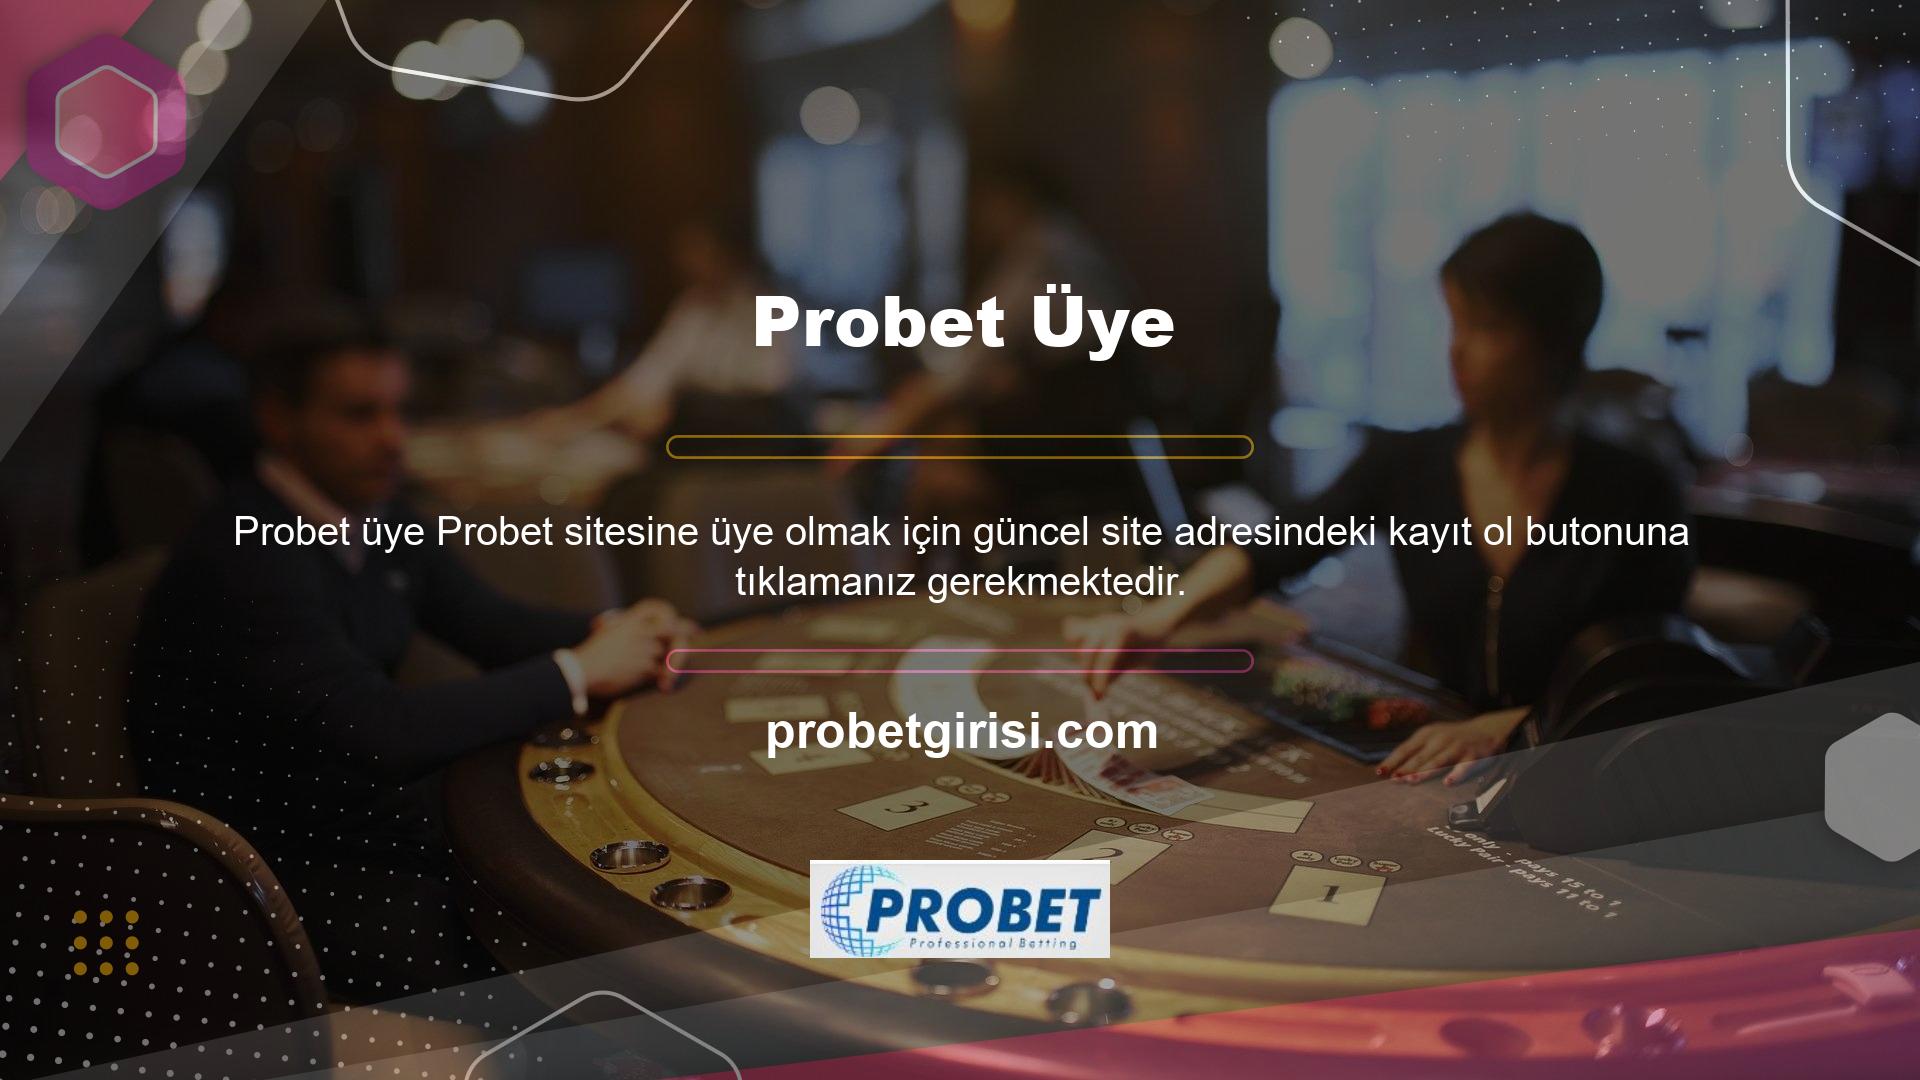 Türkiye'deki casino işlemlerine getirilen kısıtlamalar nedeniyle, Probet web sitesi giriş adresi bazı kuruluşlar dışında kapalıdır